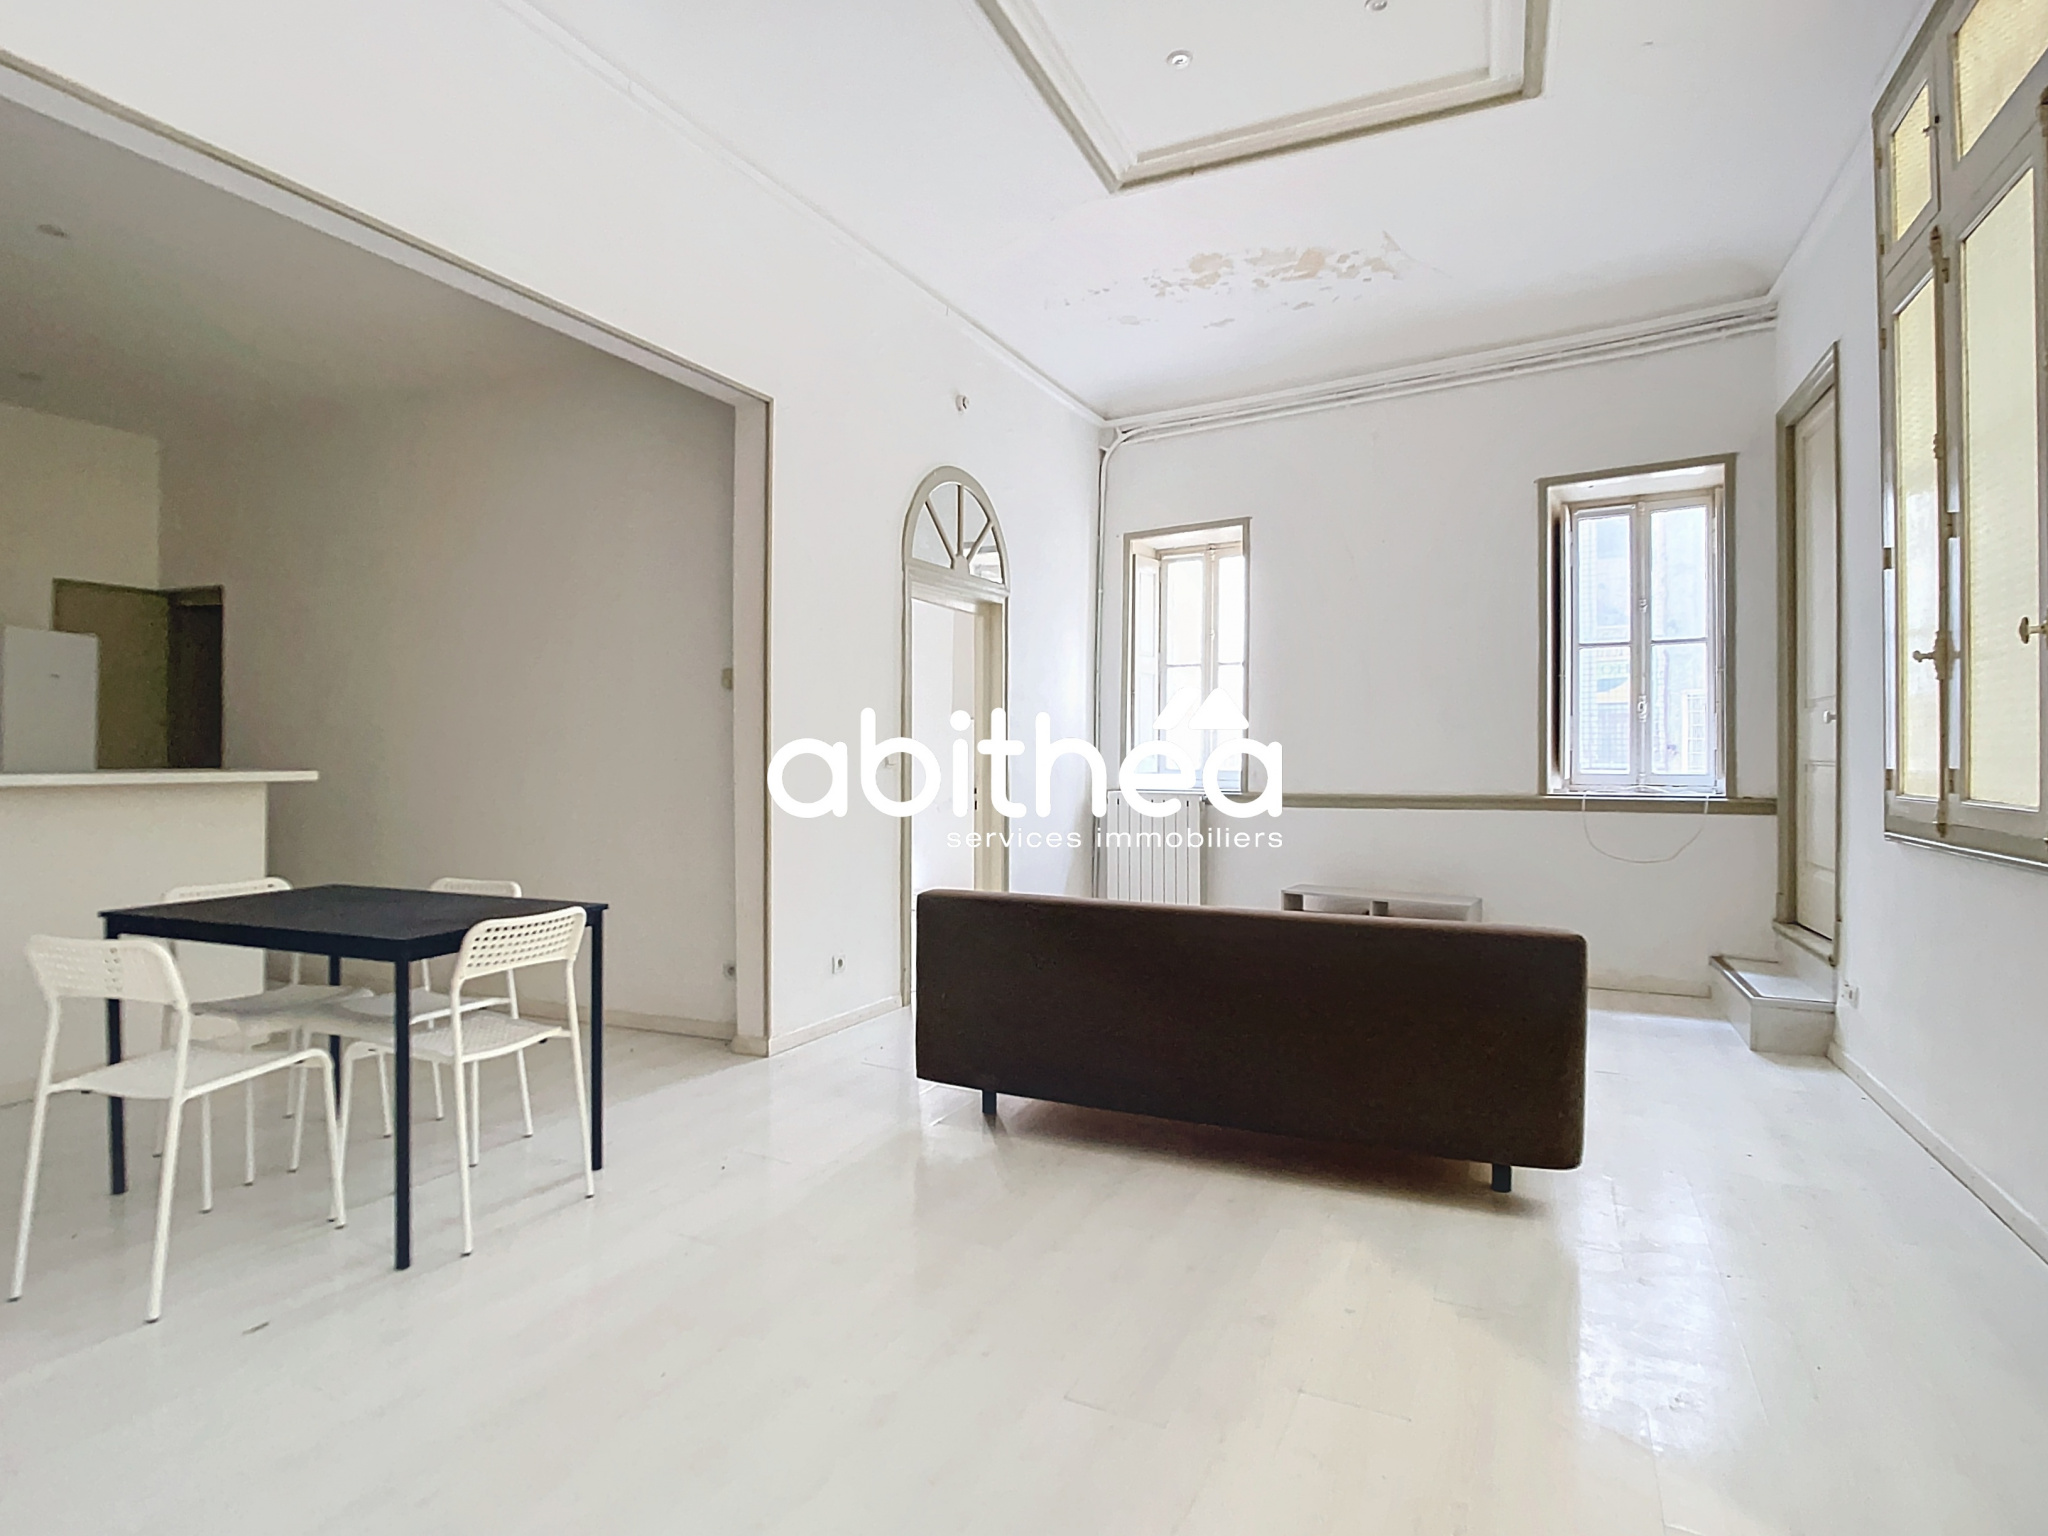 Vente Appartement 56m² 2 Pièces à Béziers (34500) - Abithea